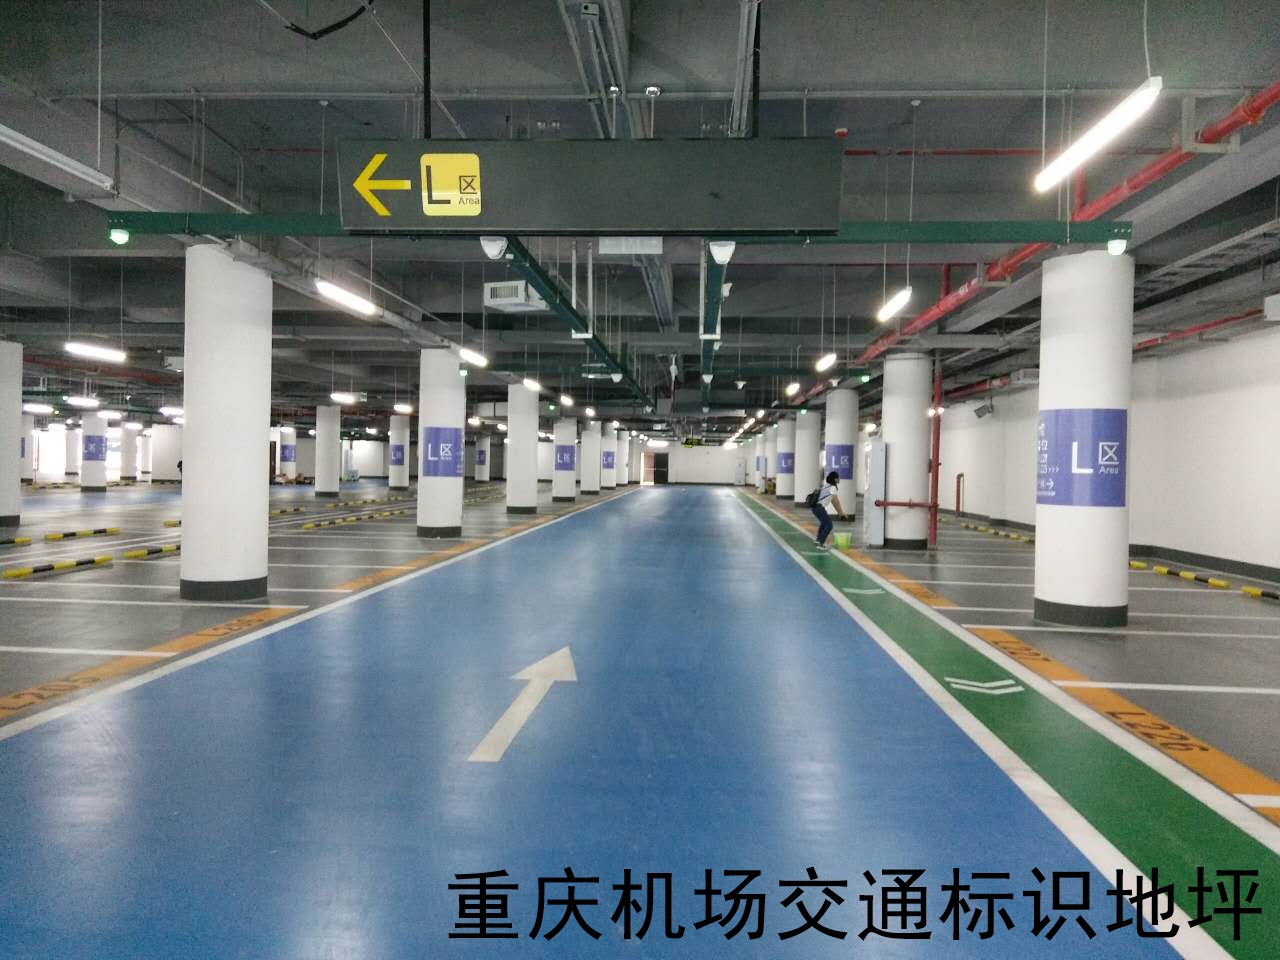 重庆机场交通设施,地坪,标识标牌,工程